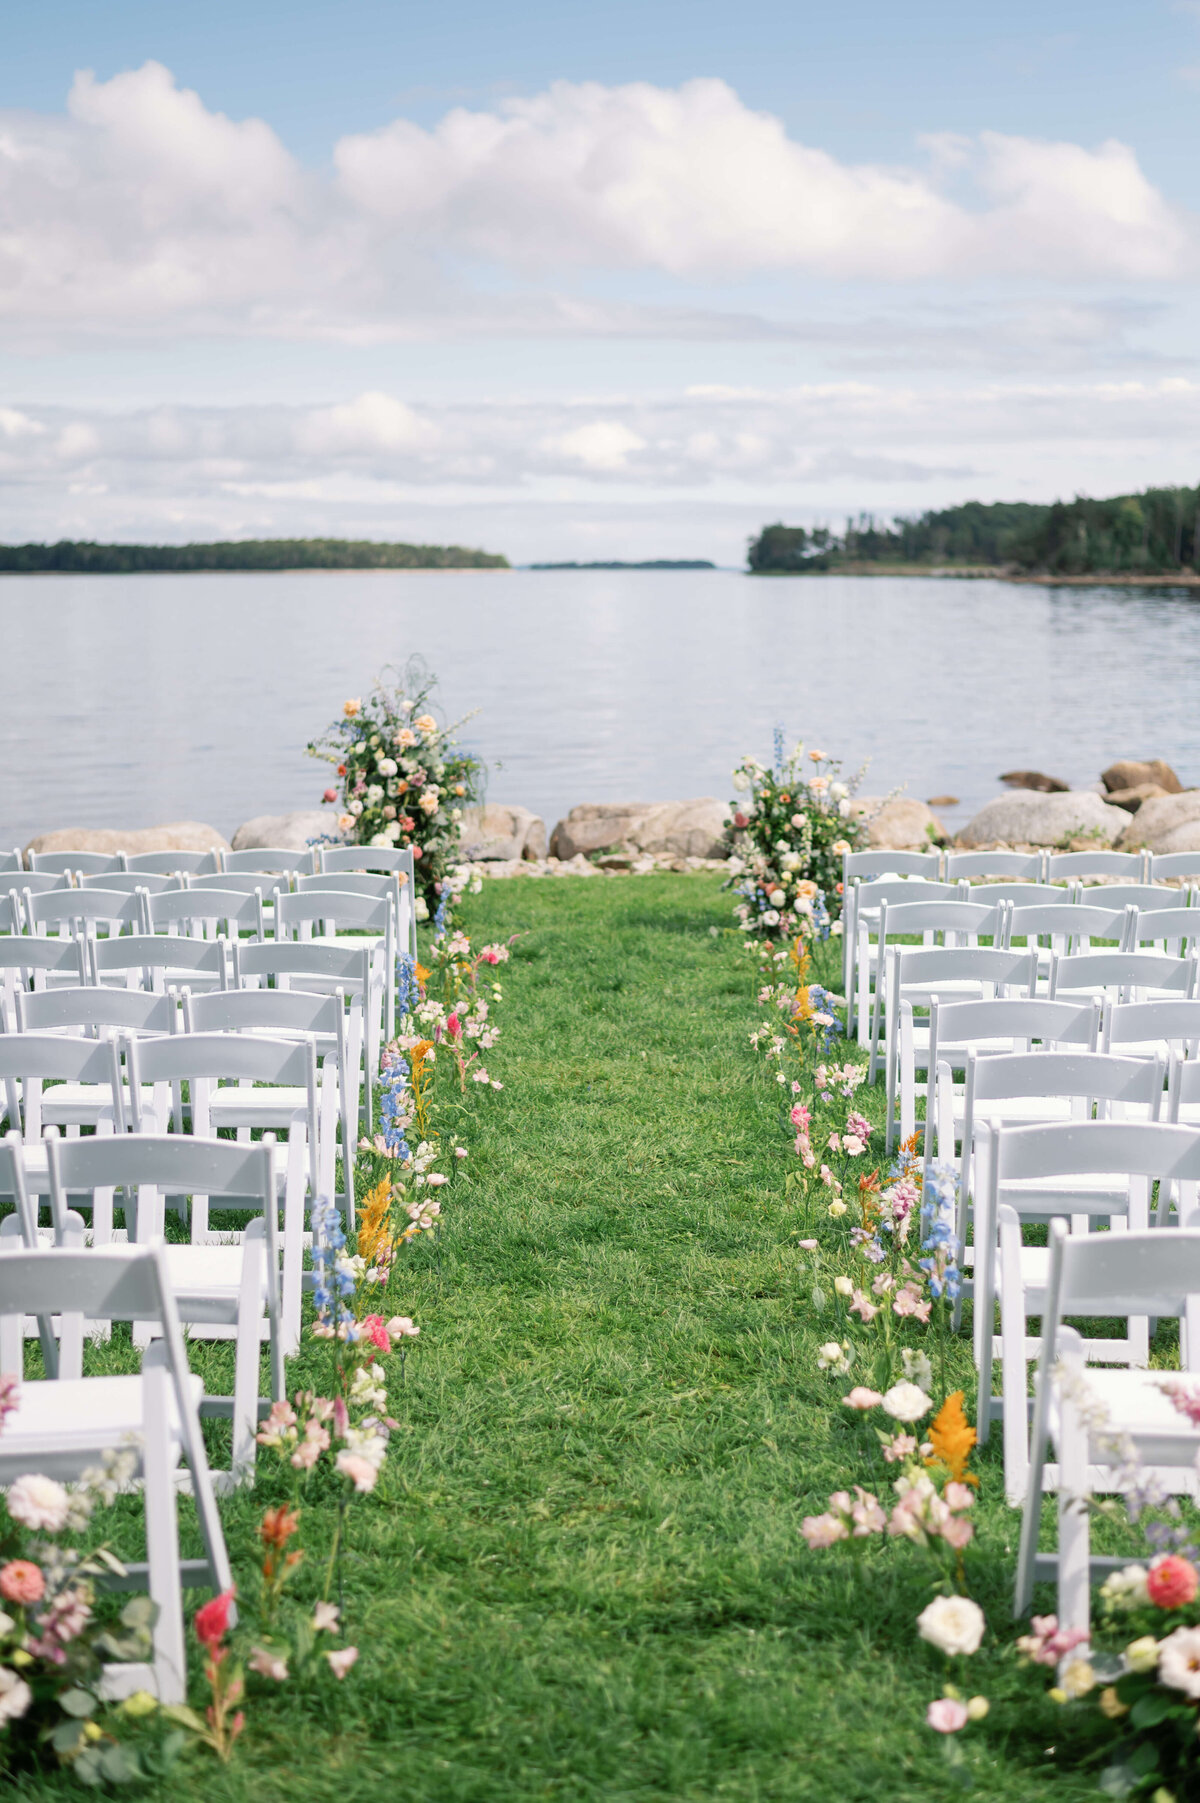 Wedding chairs for wedding ceremony overlooking ocean at Oak Island Resort Wedding, Nova Scotia